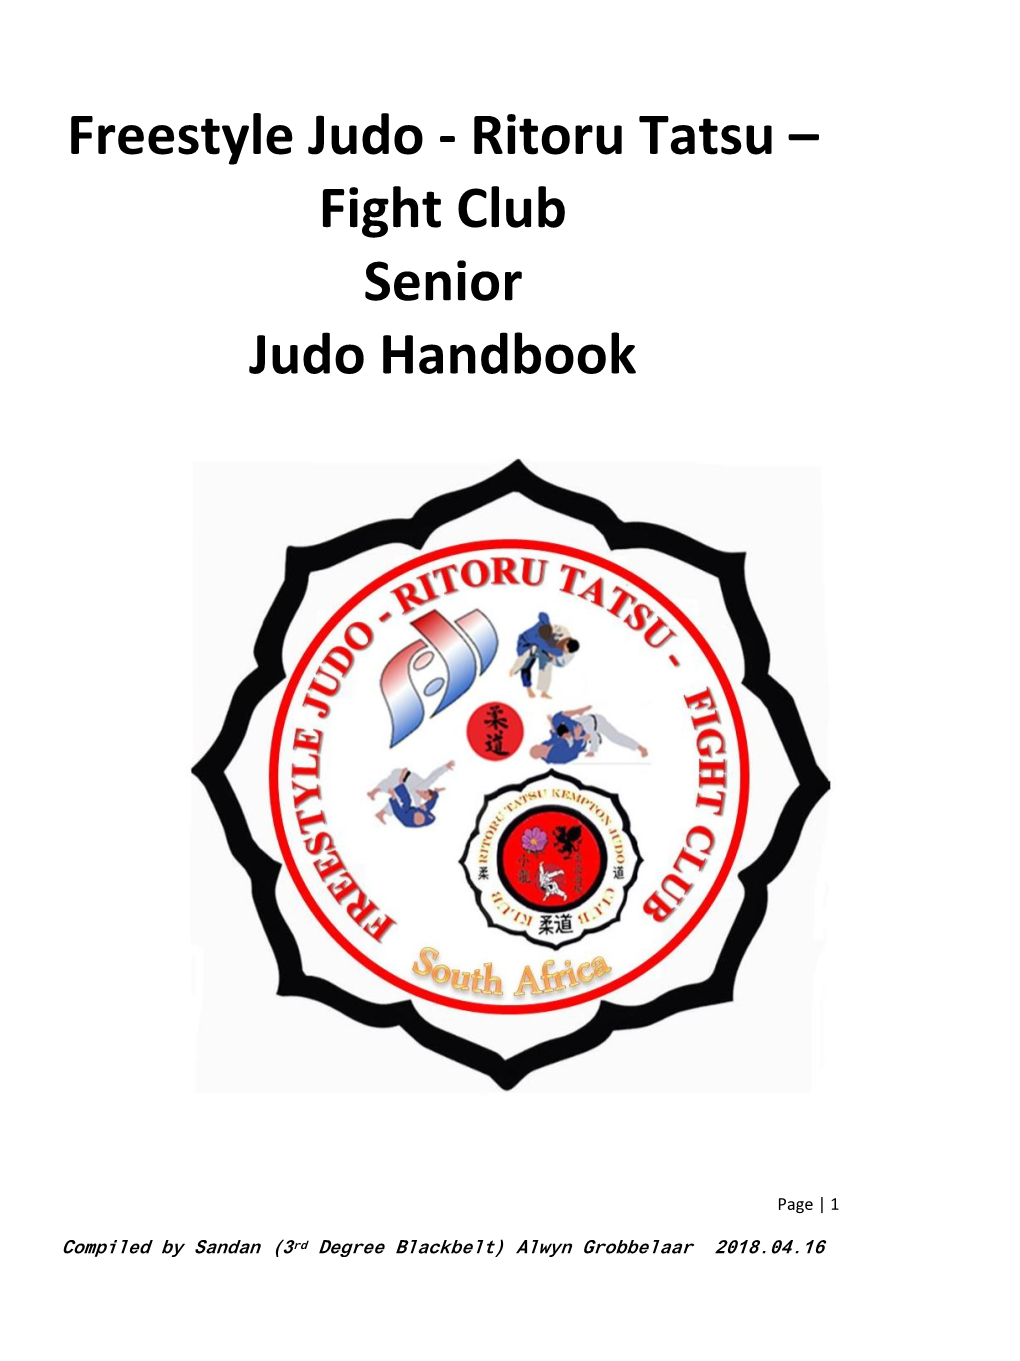 Ritoru Tatsu – Fight Club Senior Judo Handbook